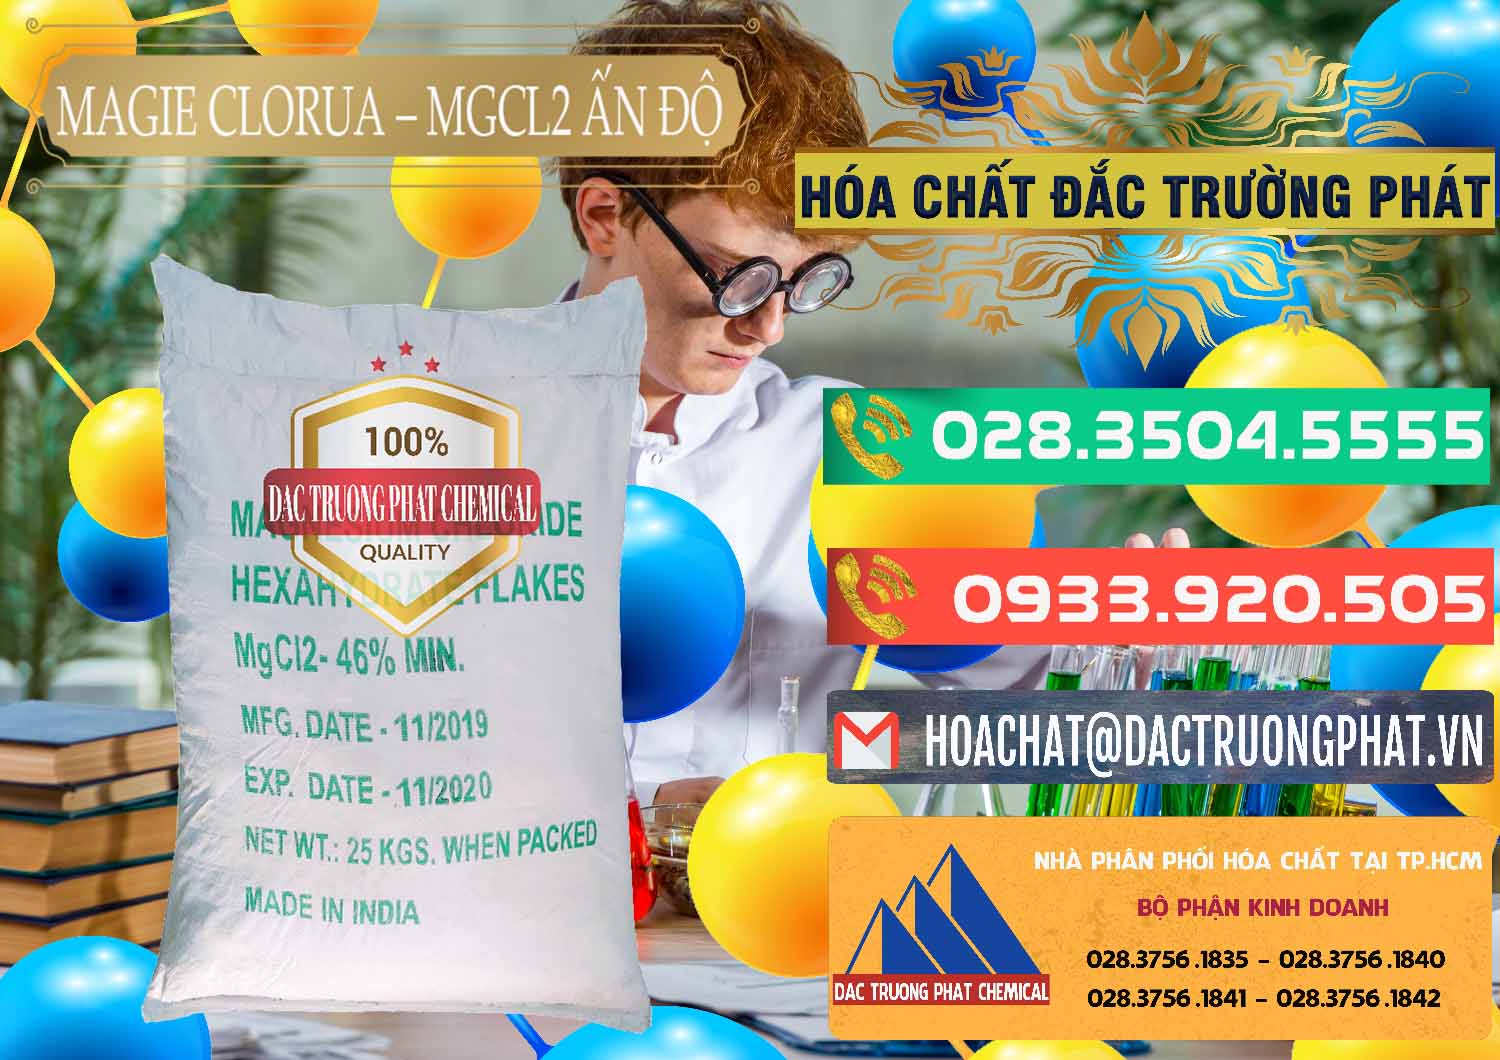 Đơn vị chuyên bán _ phân phối Magie Clorua – MGCL2 46% Dạng Vảy Ấn Độ India - 0092 - Cty chuyên cung cấp & nhập khẩu hóa chất tại TP.HCM - congtyhoachat.com.vn